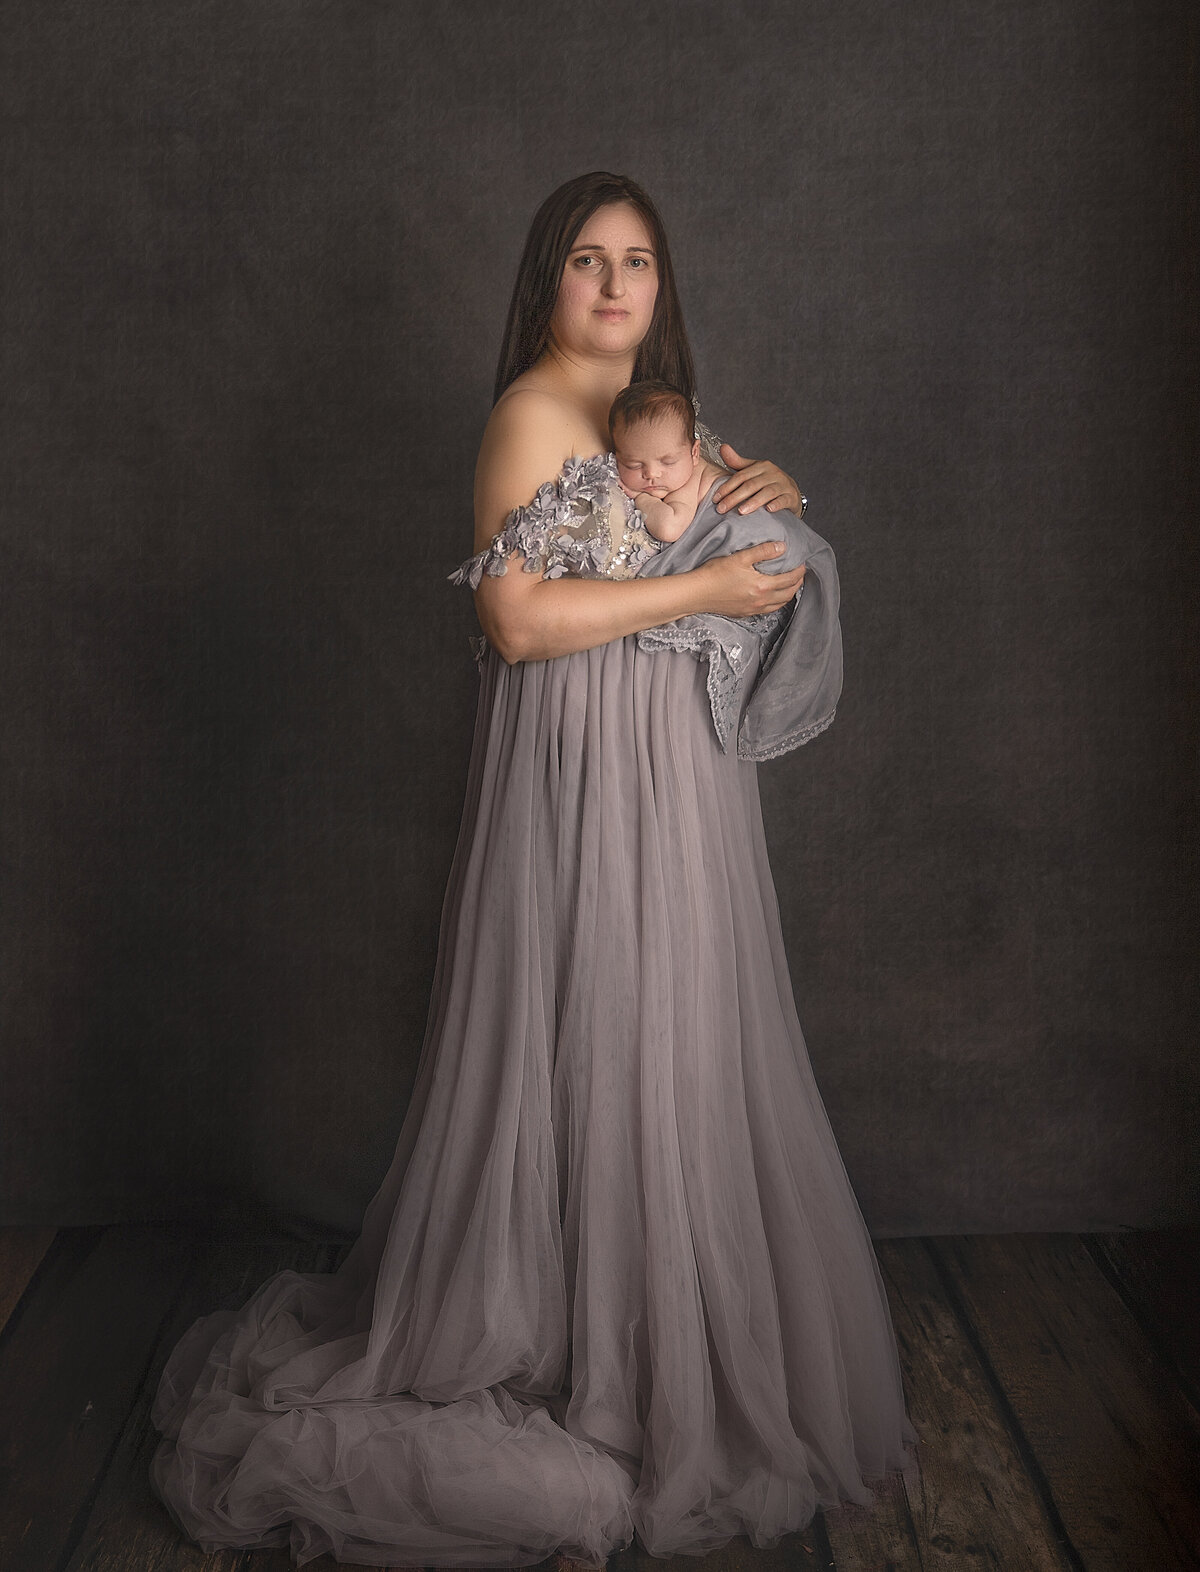 Mother abd newborn portrait taken by Sonia Gourlie Fine art photography Studio